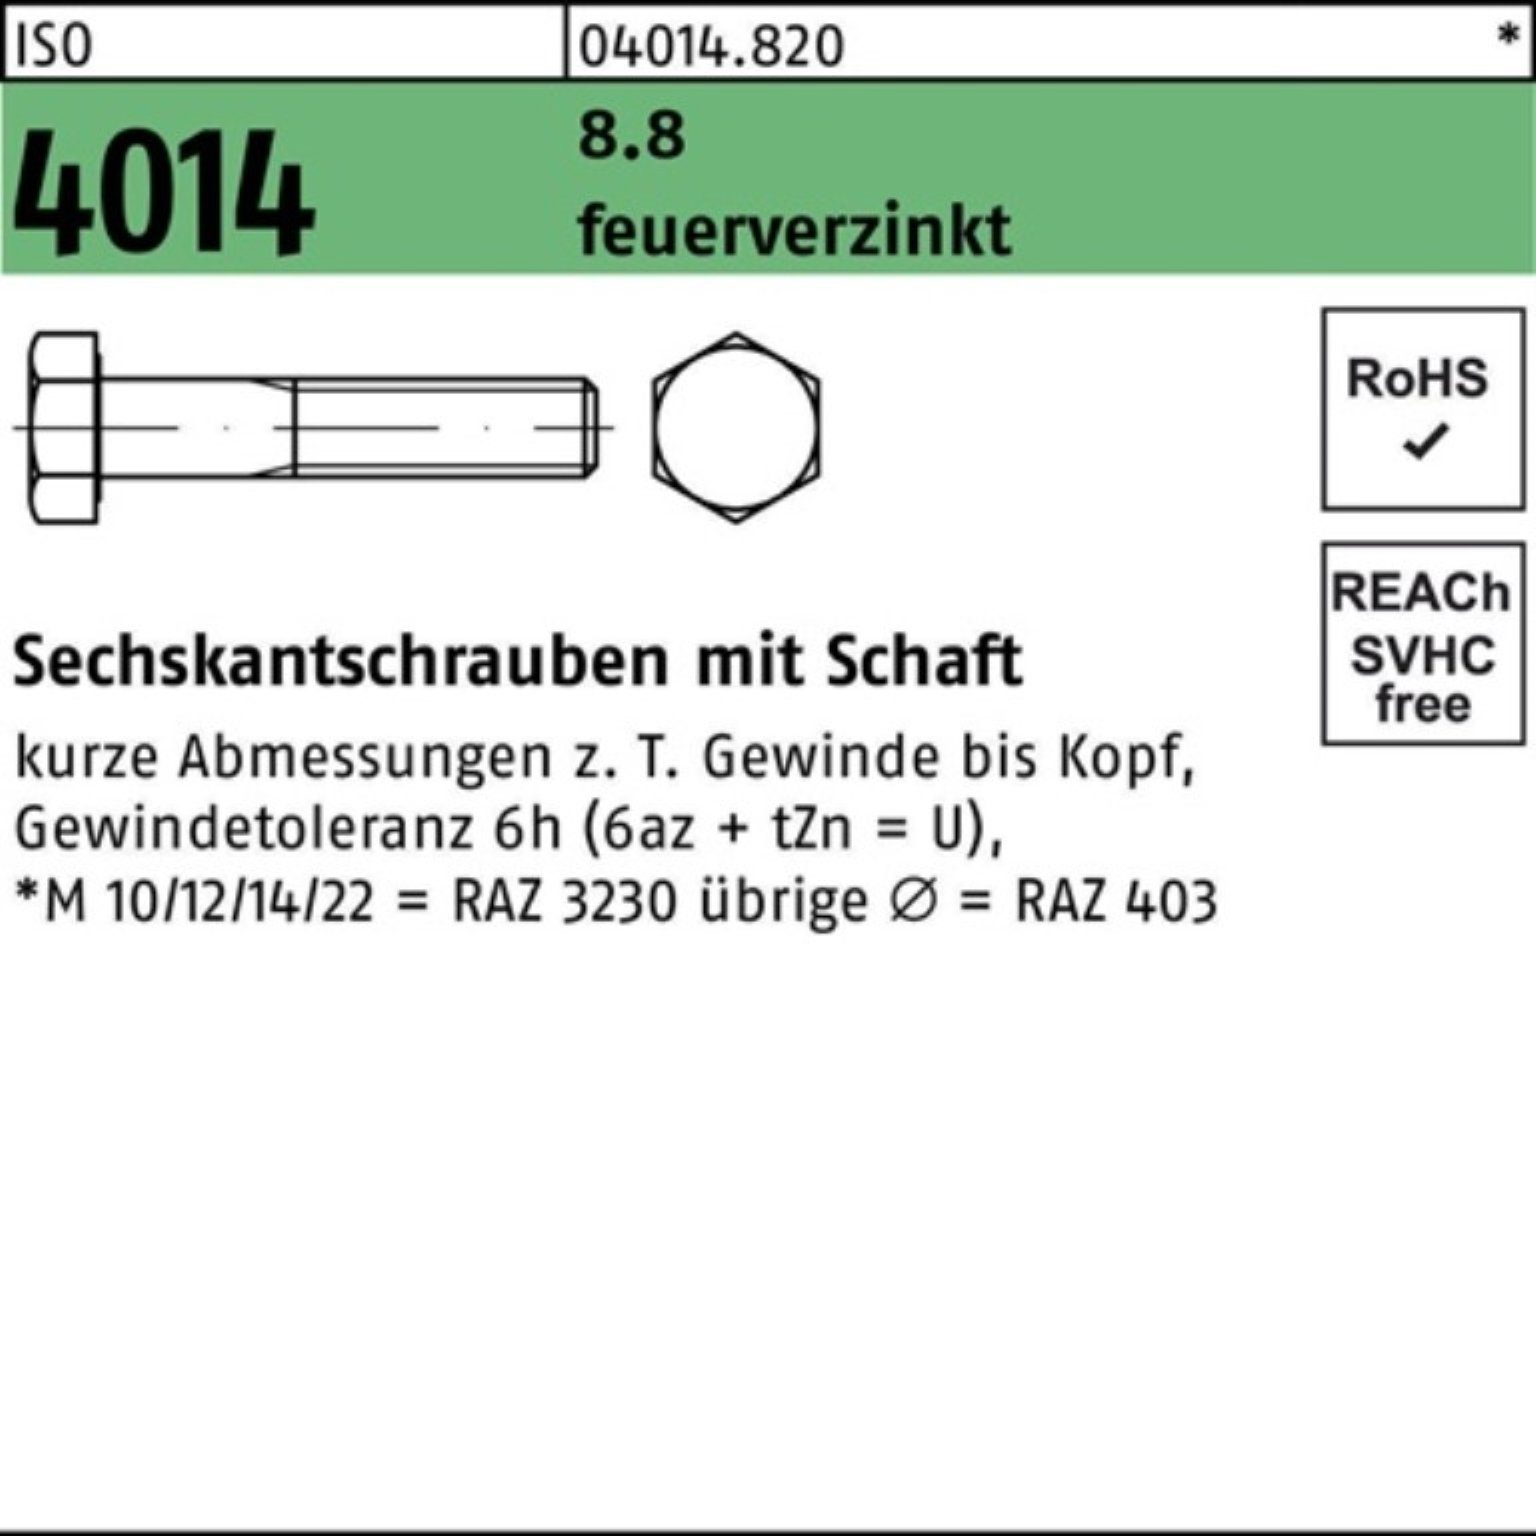 Bufab Sechskantschraube 100er Pack Sechskantschraube ISO 4014 Schaft M16x 110 8.8 feuerverz. 2